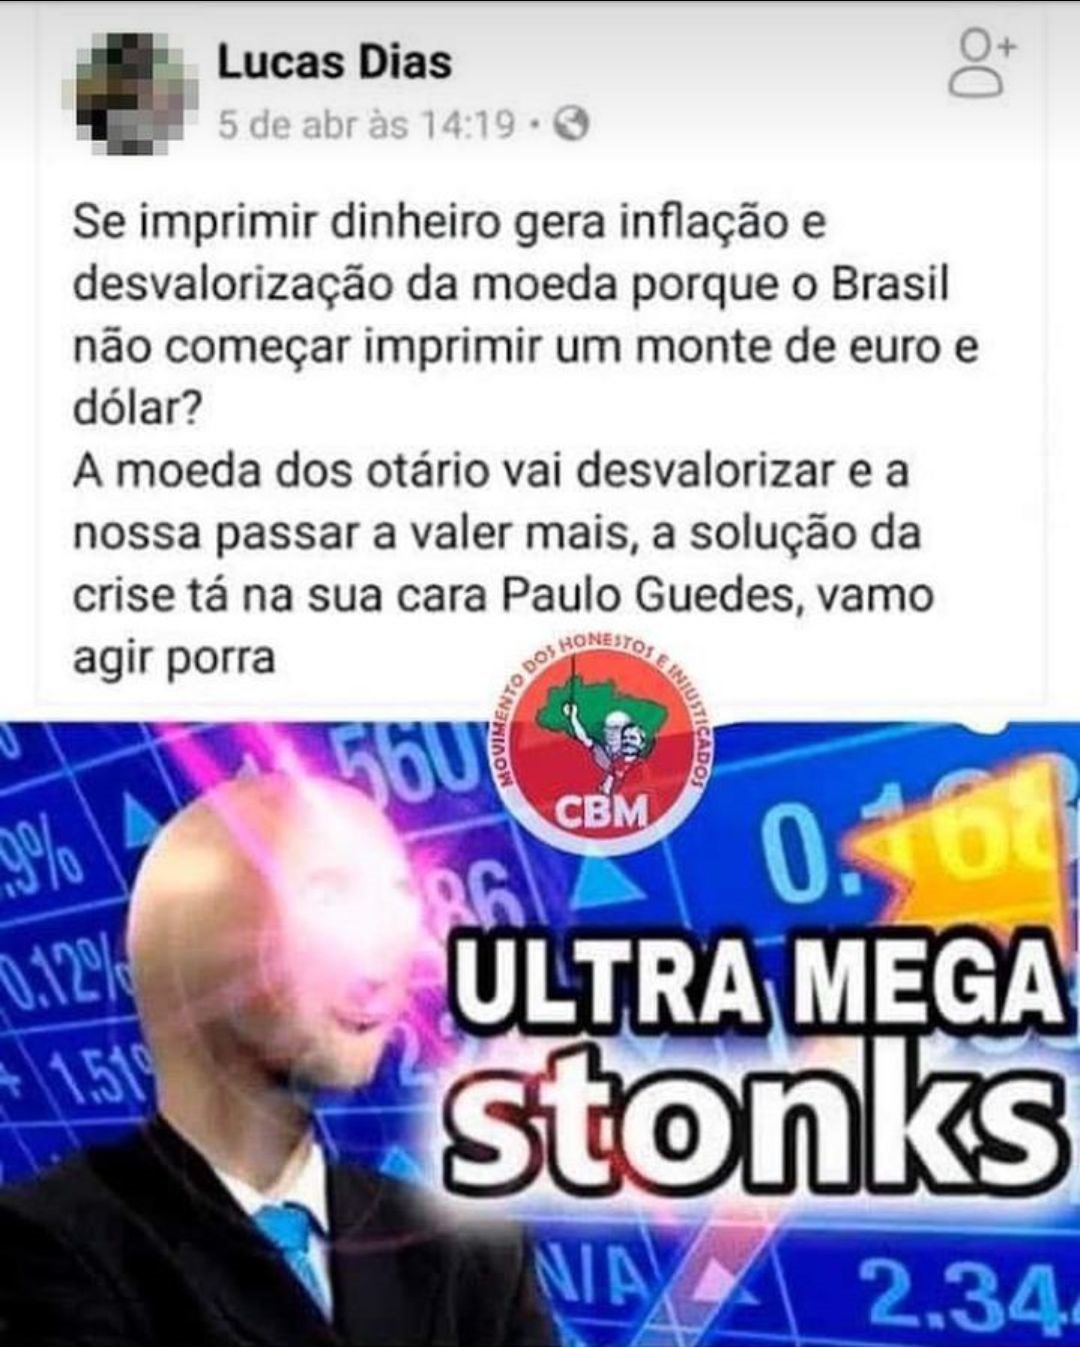 ultra mega stonks - meme